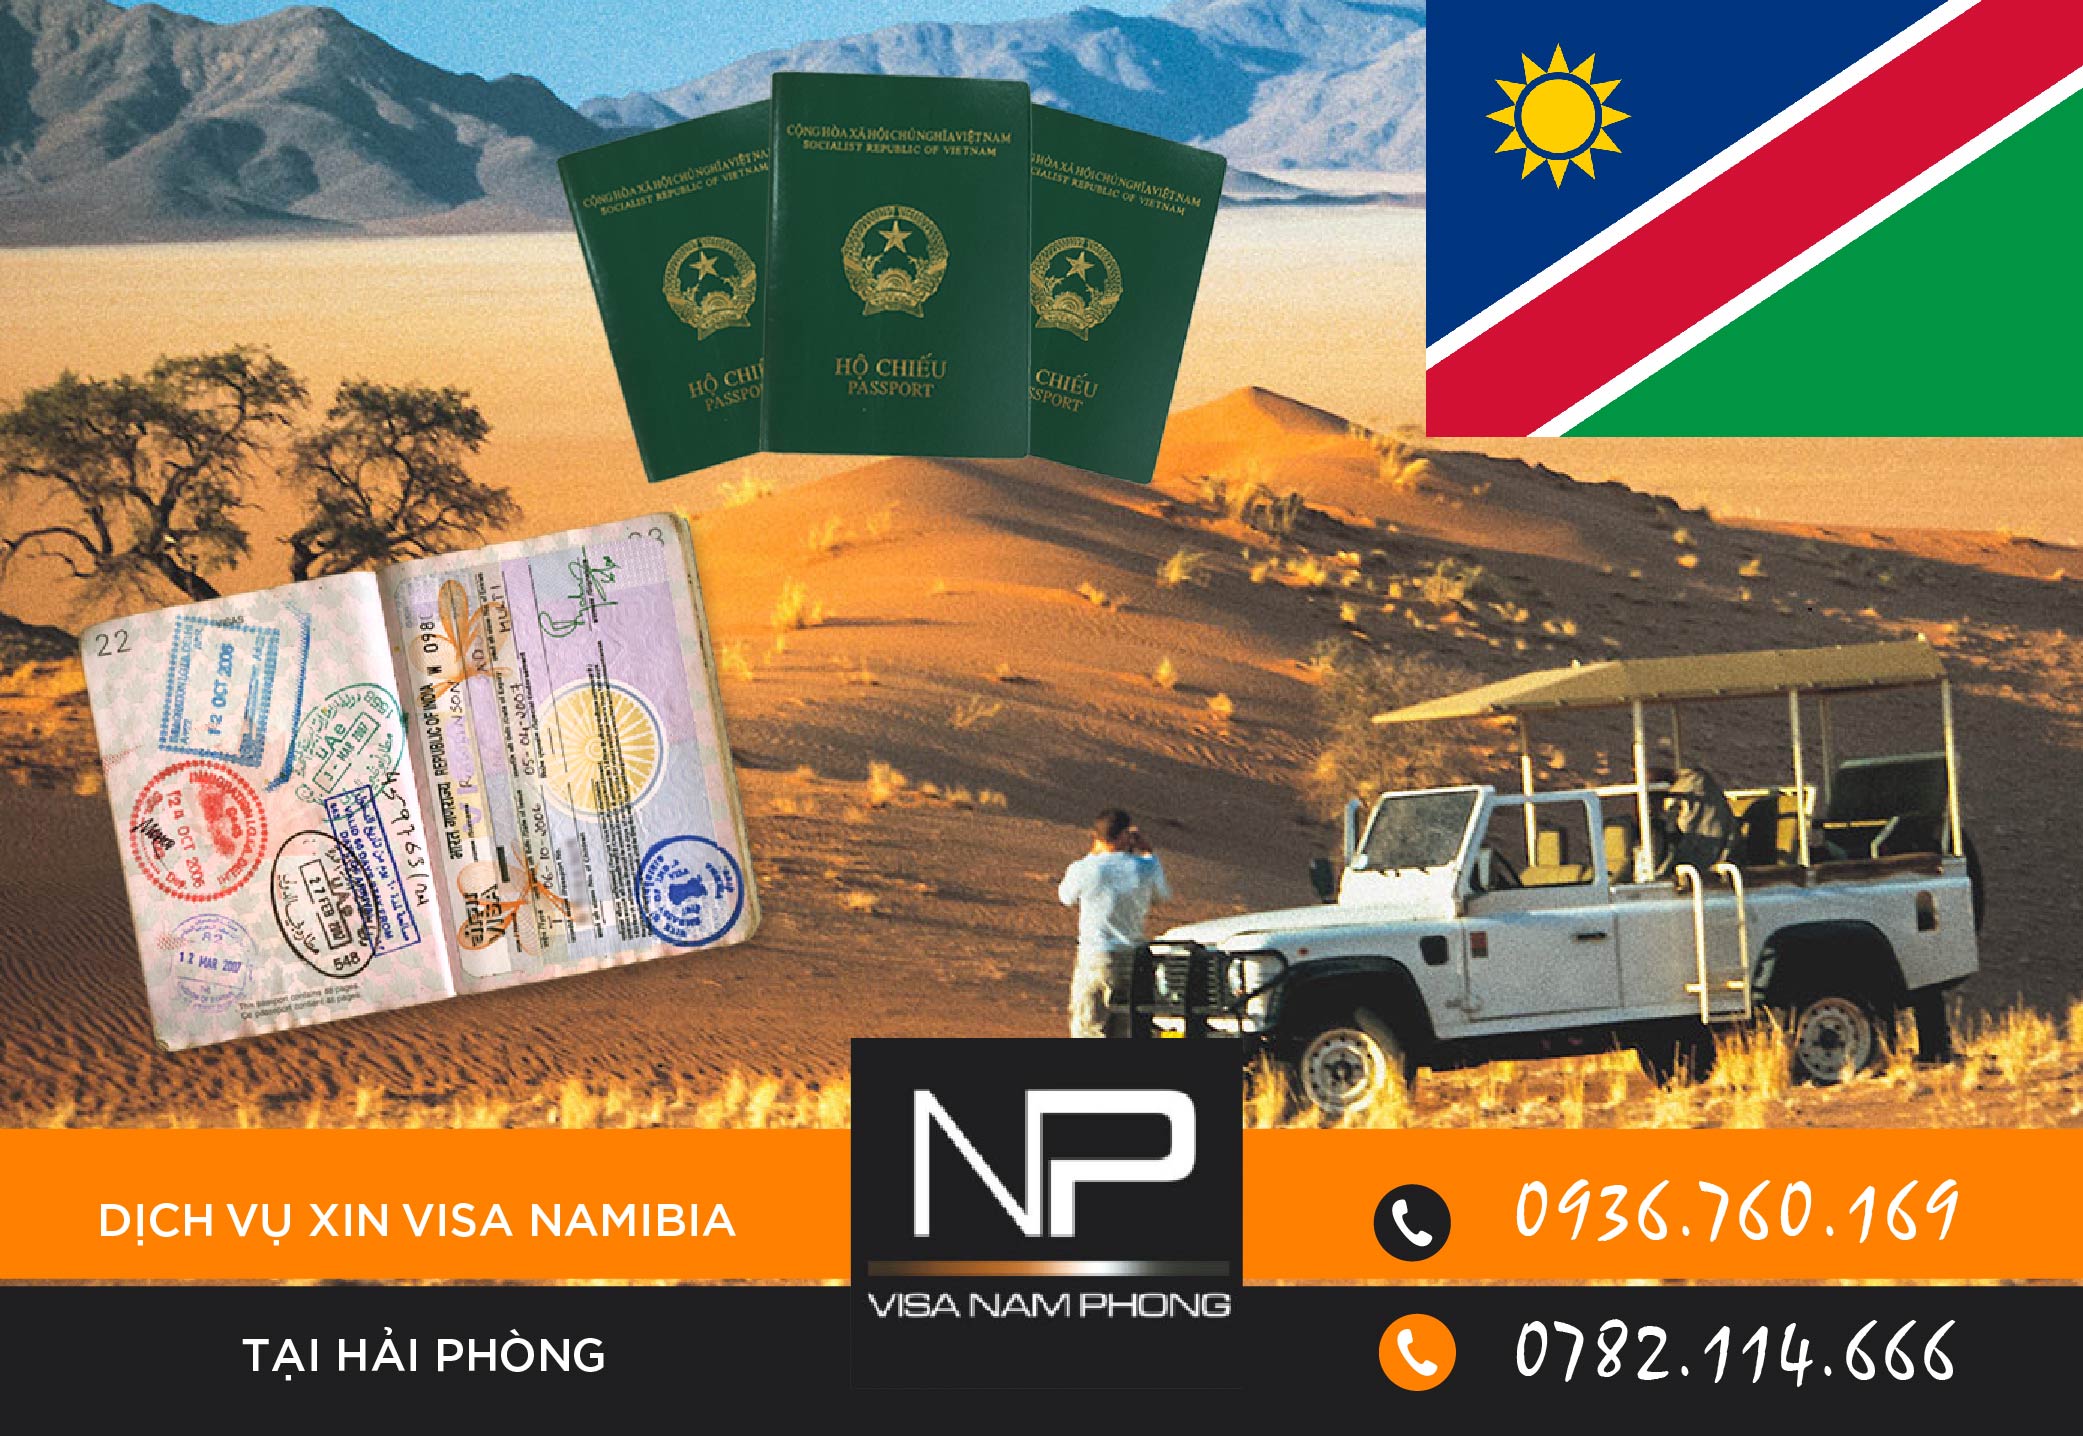 Dịch vụ xin visa Namibia tại Hải Phòng